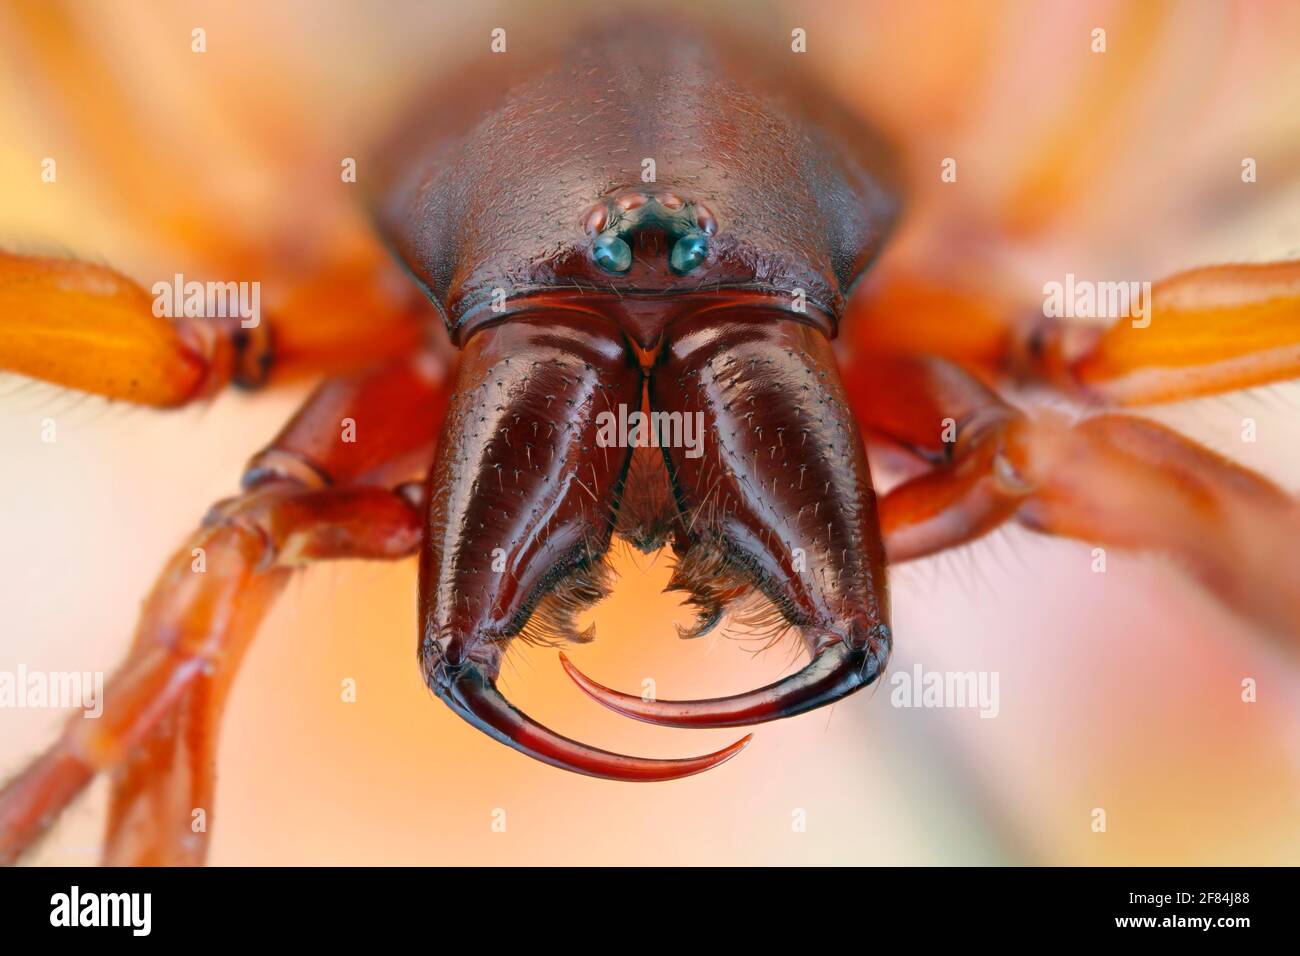 Frontalansicht einer Spinne (Dysdera crocata) Mit großen Klauen Stockfoto